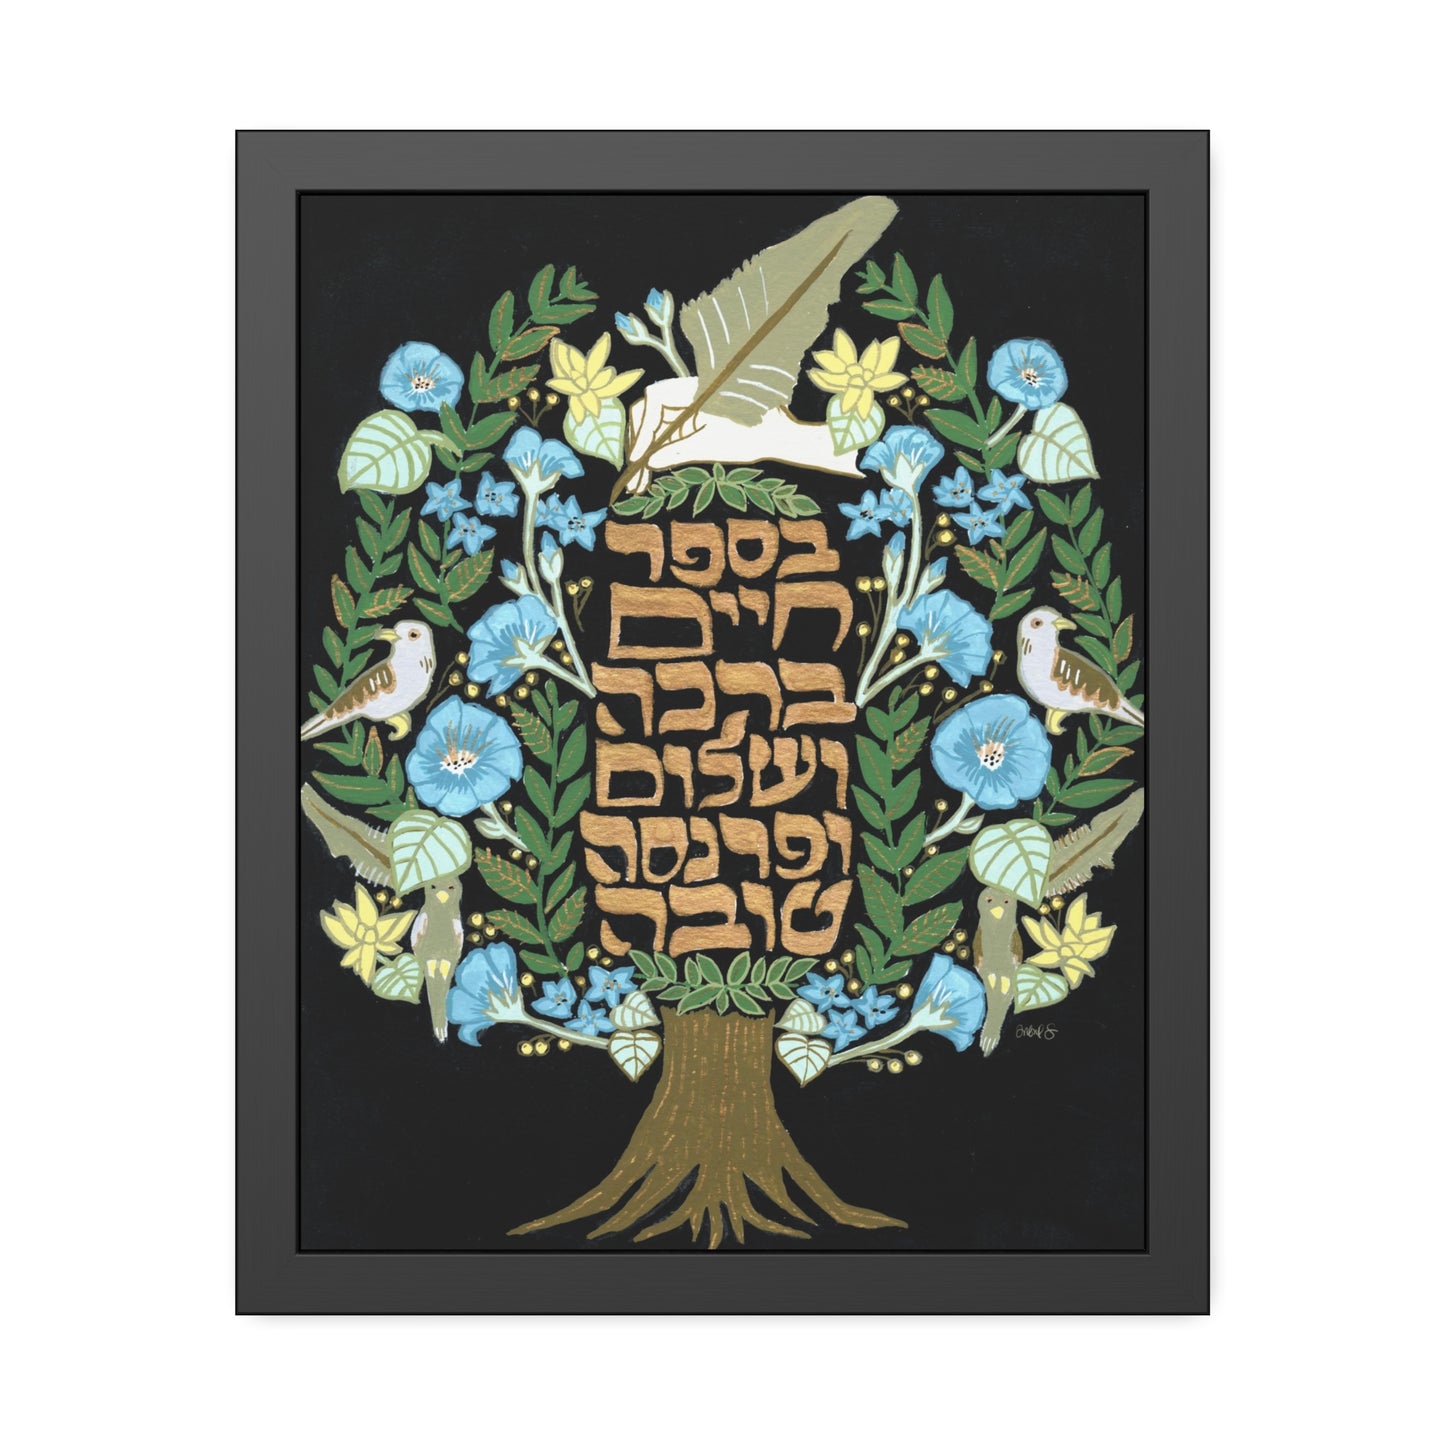 “Tree of Life & Blessings” by Inbal Singer Framed Paper Print